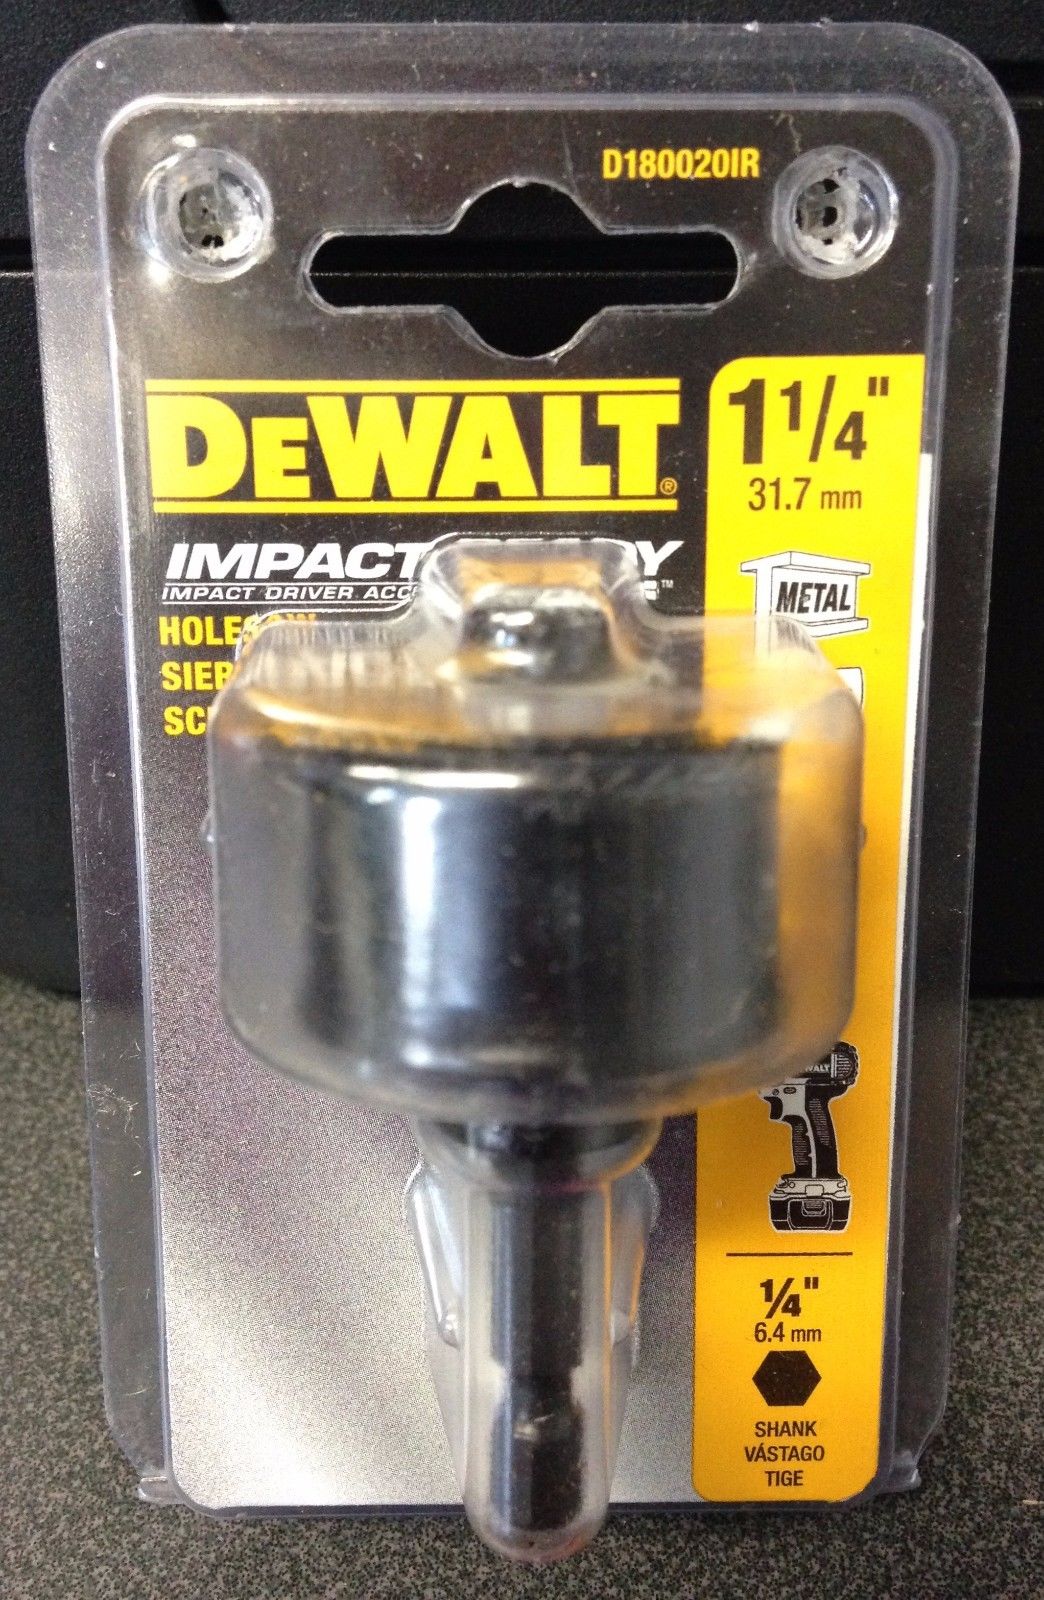 Dewalt D180020IR 1-1/4" Impact Ready Hole Saw 1/4" Shank